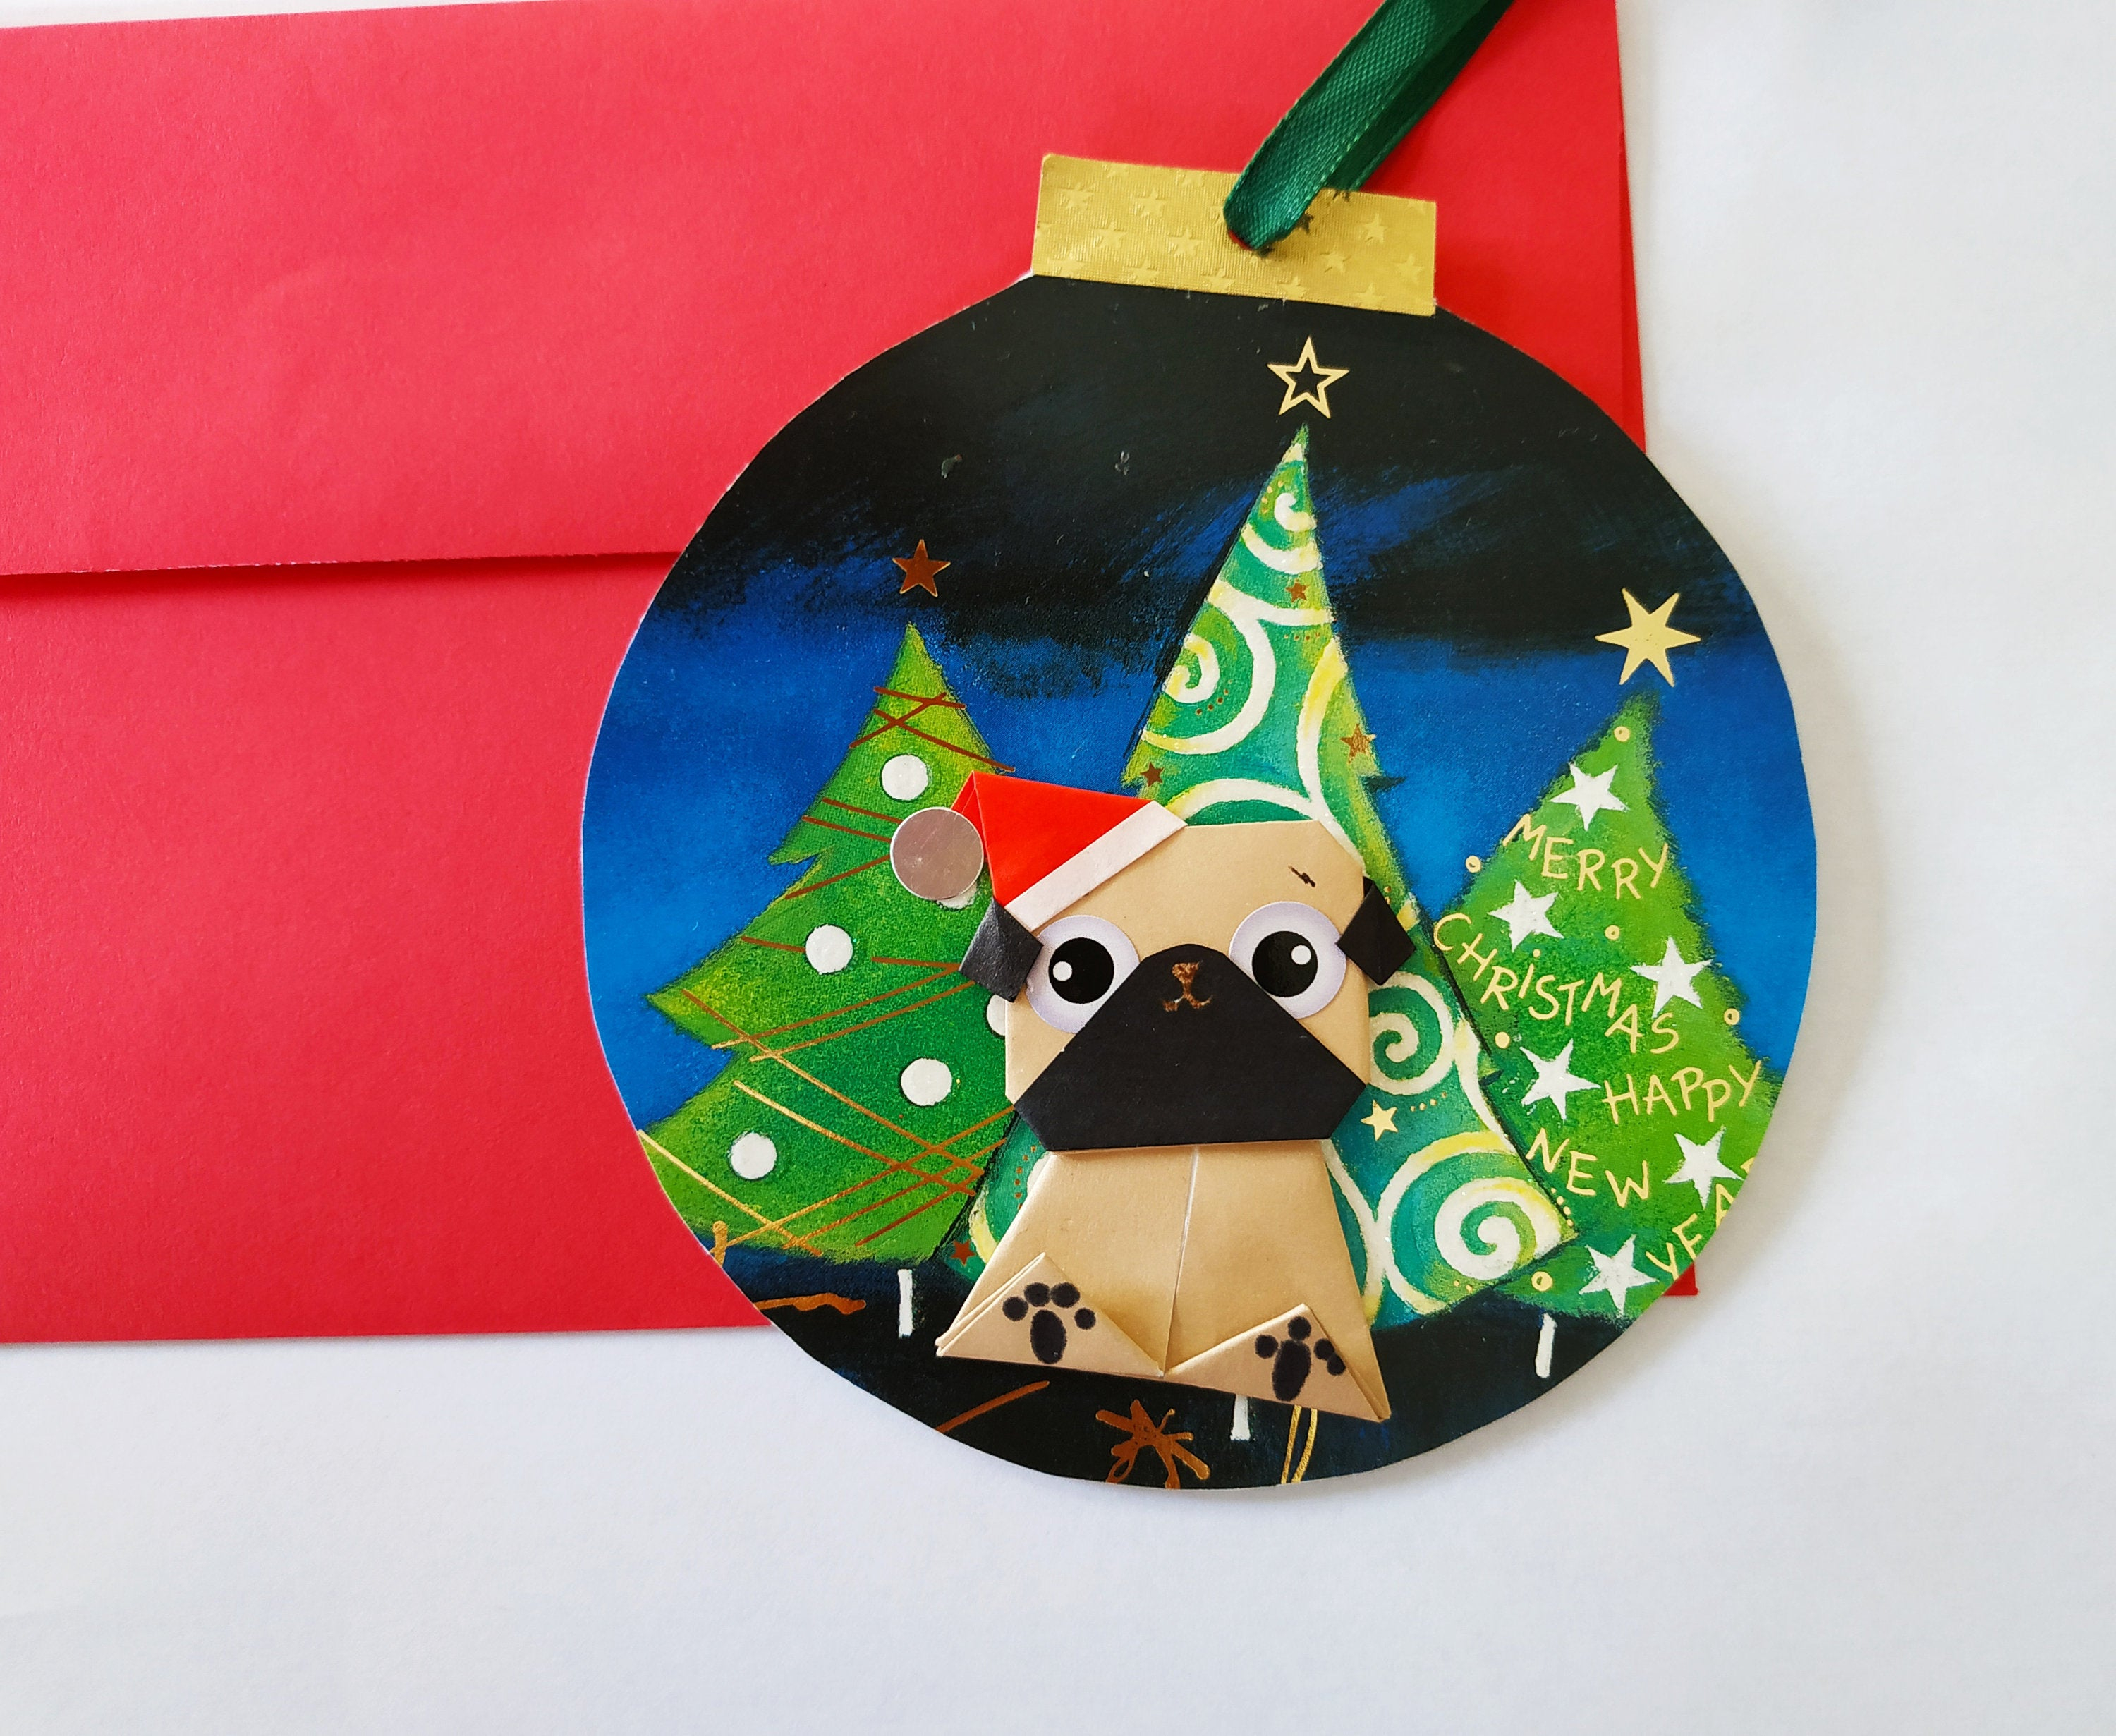 How To Make An Origami Pug Funny Pug Christmas Card Origami Christmas Ball Ornament Fawn Pug Card Dog Christmas Card